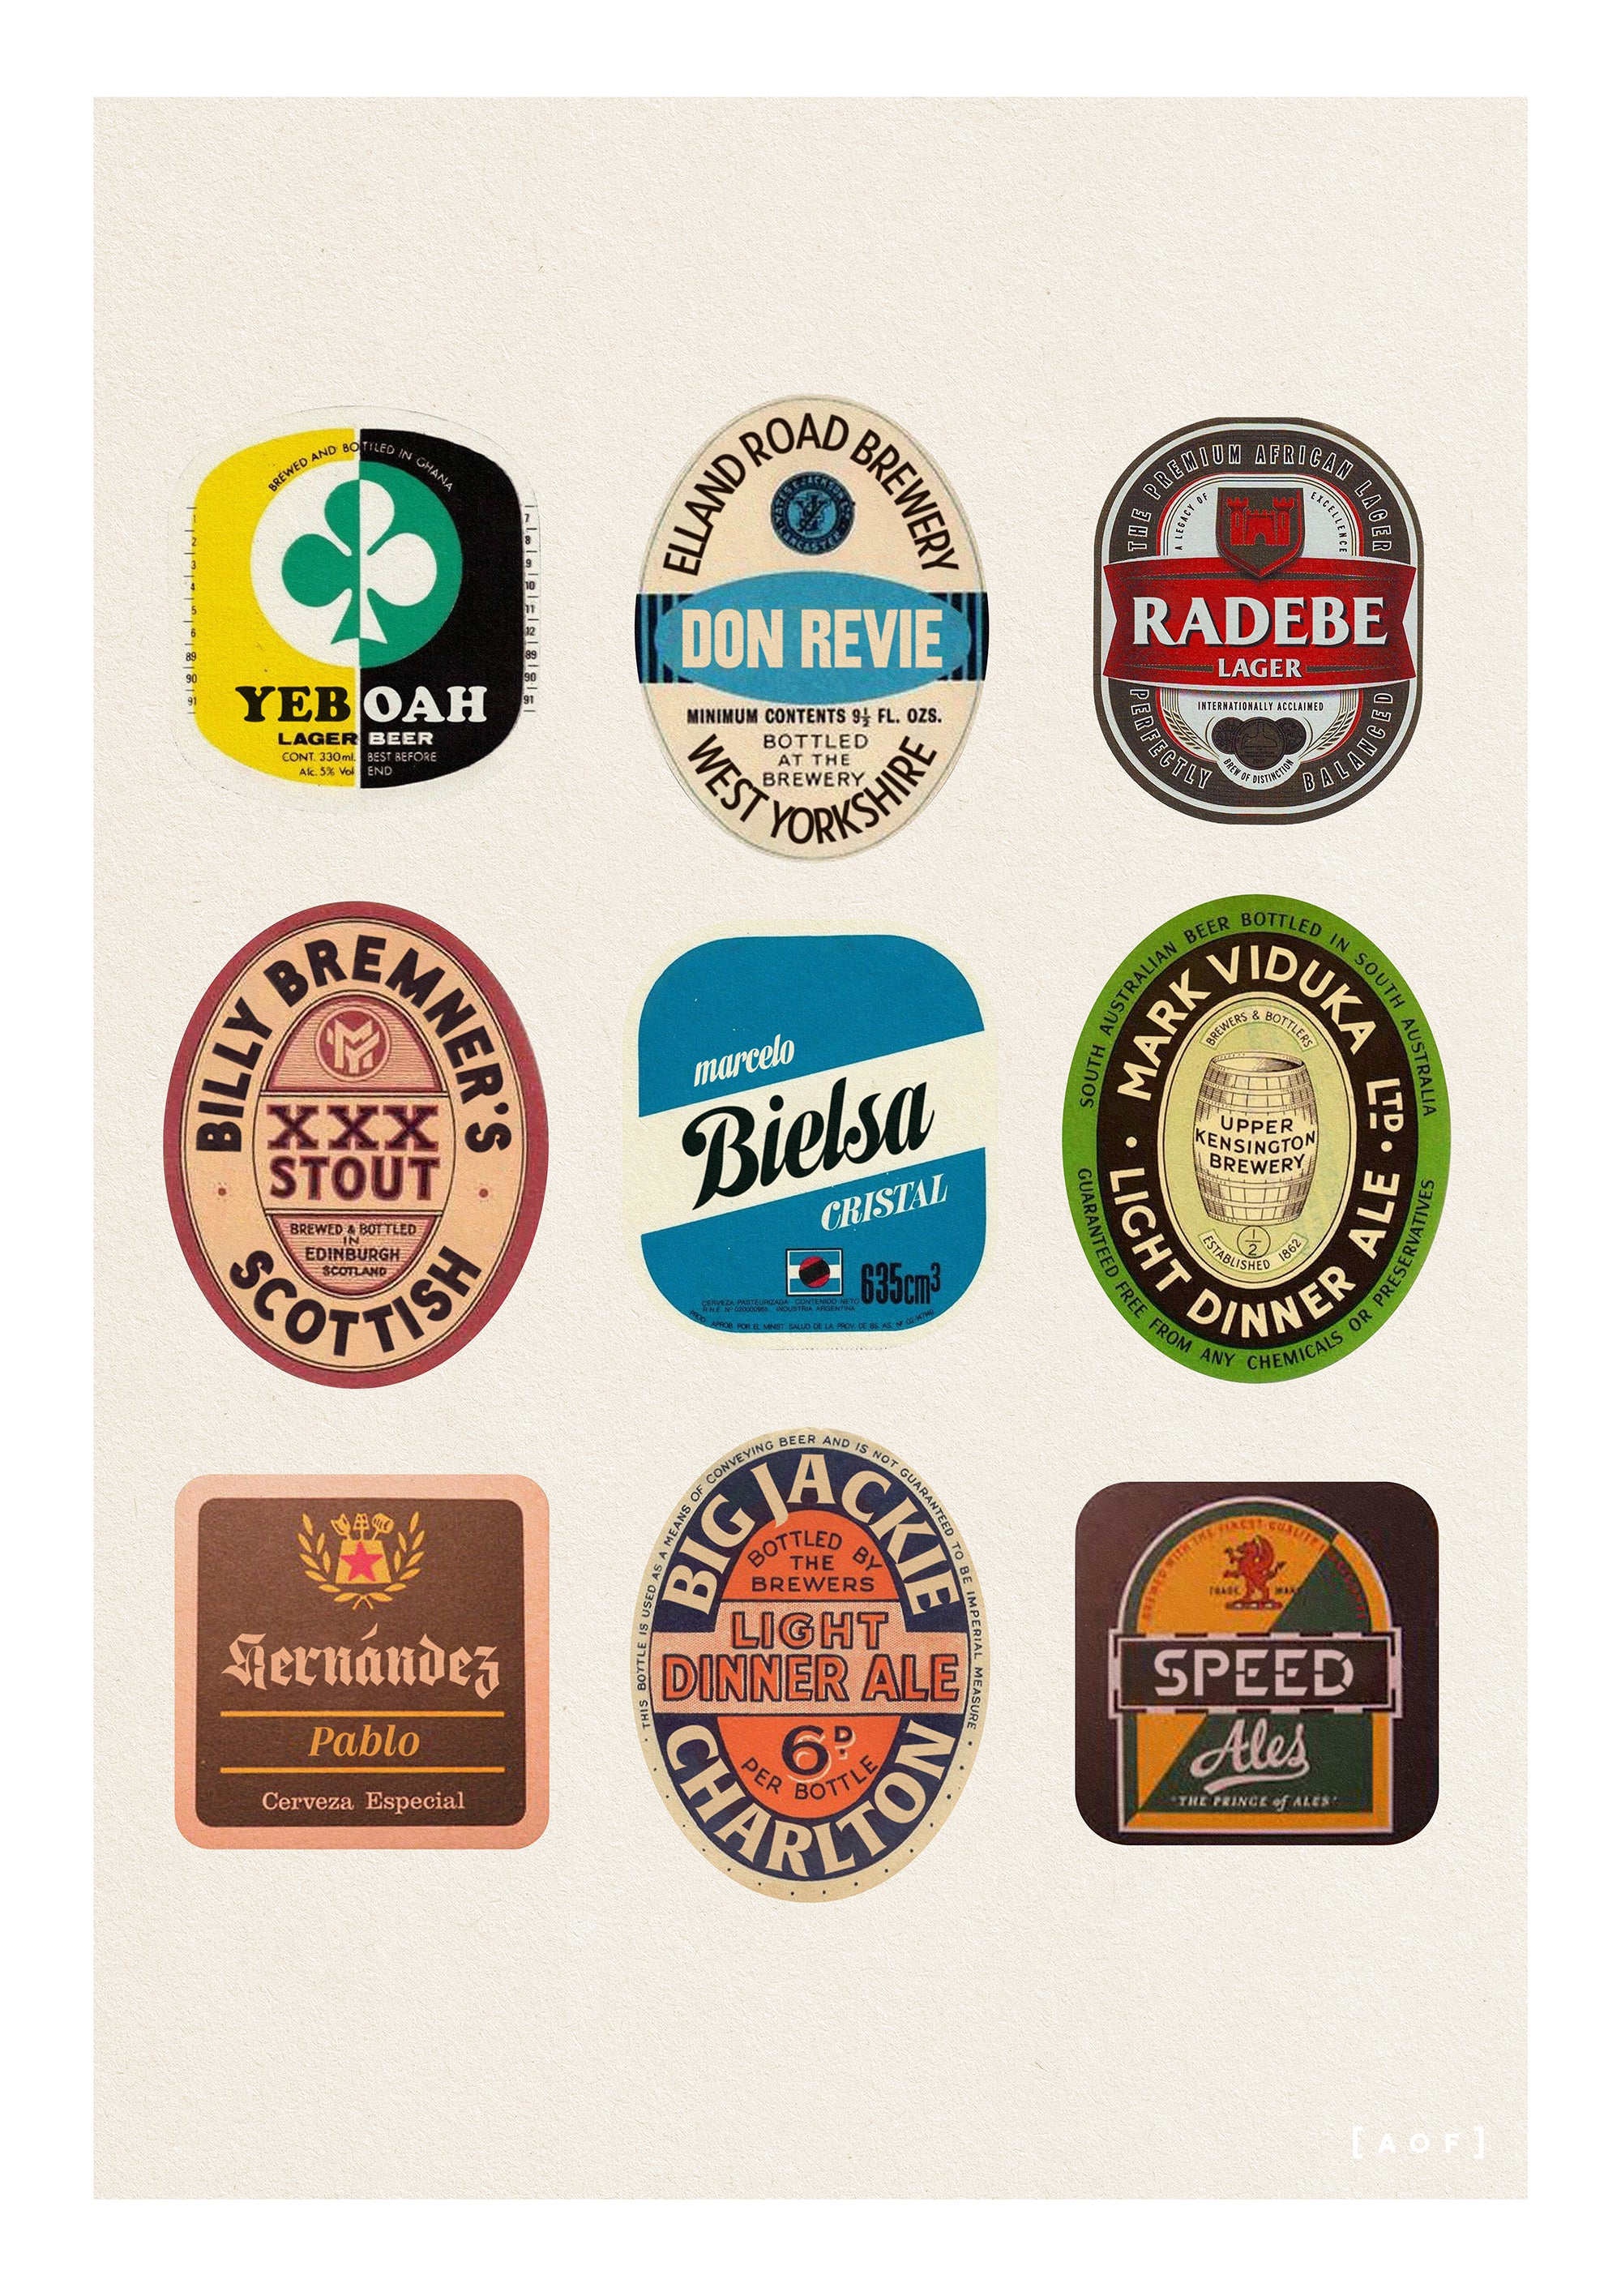 Elland Road Brewery - Print